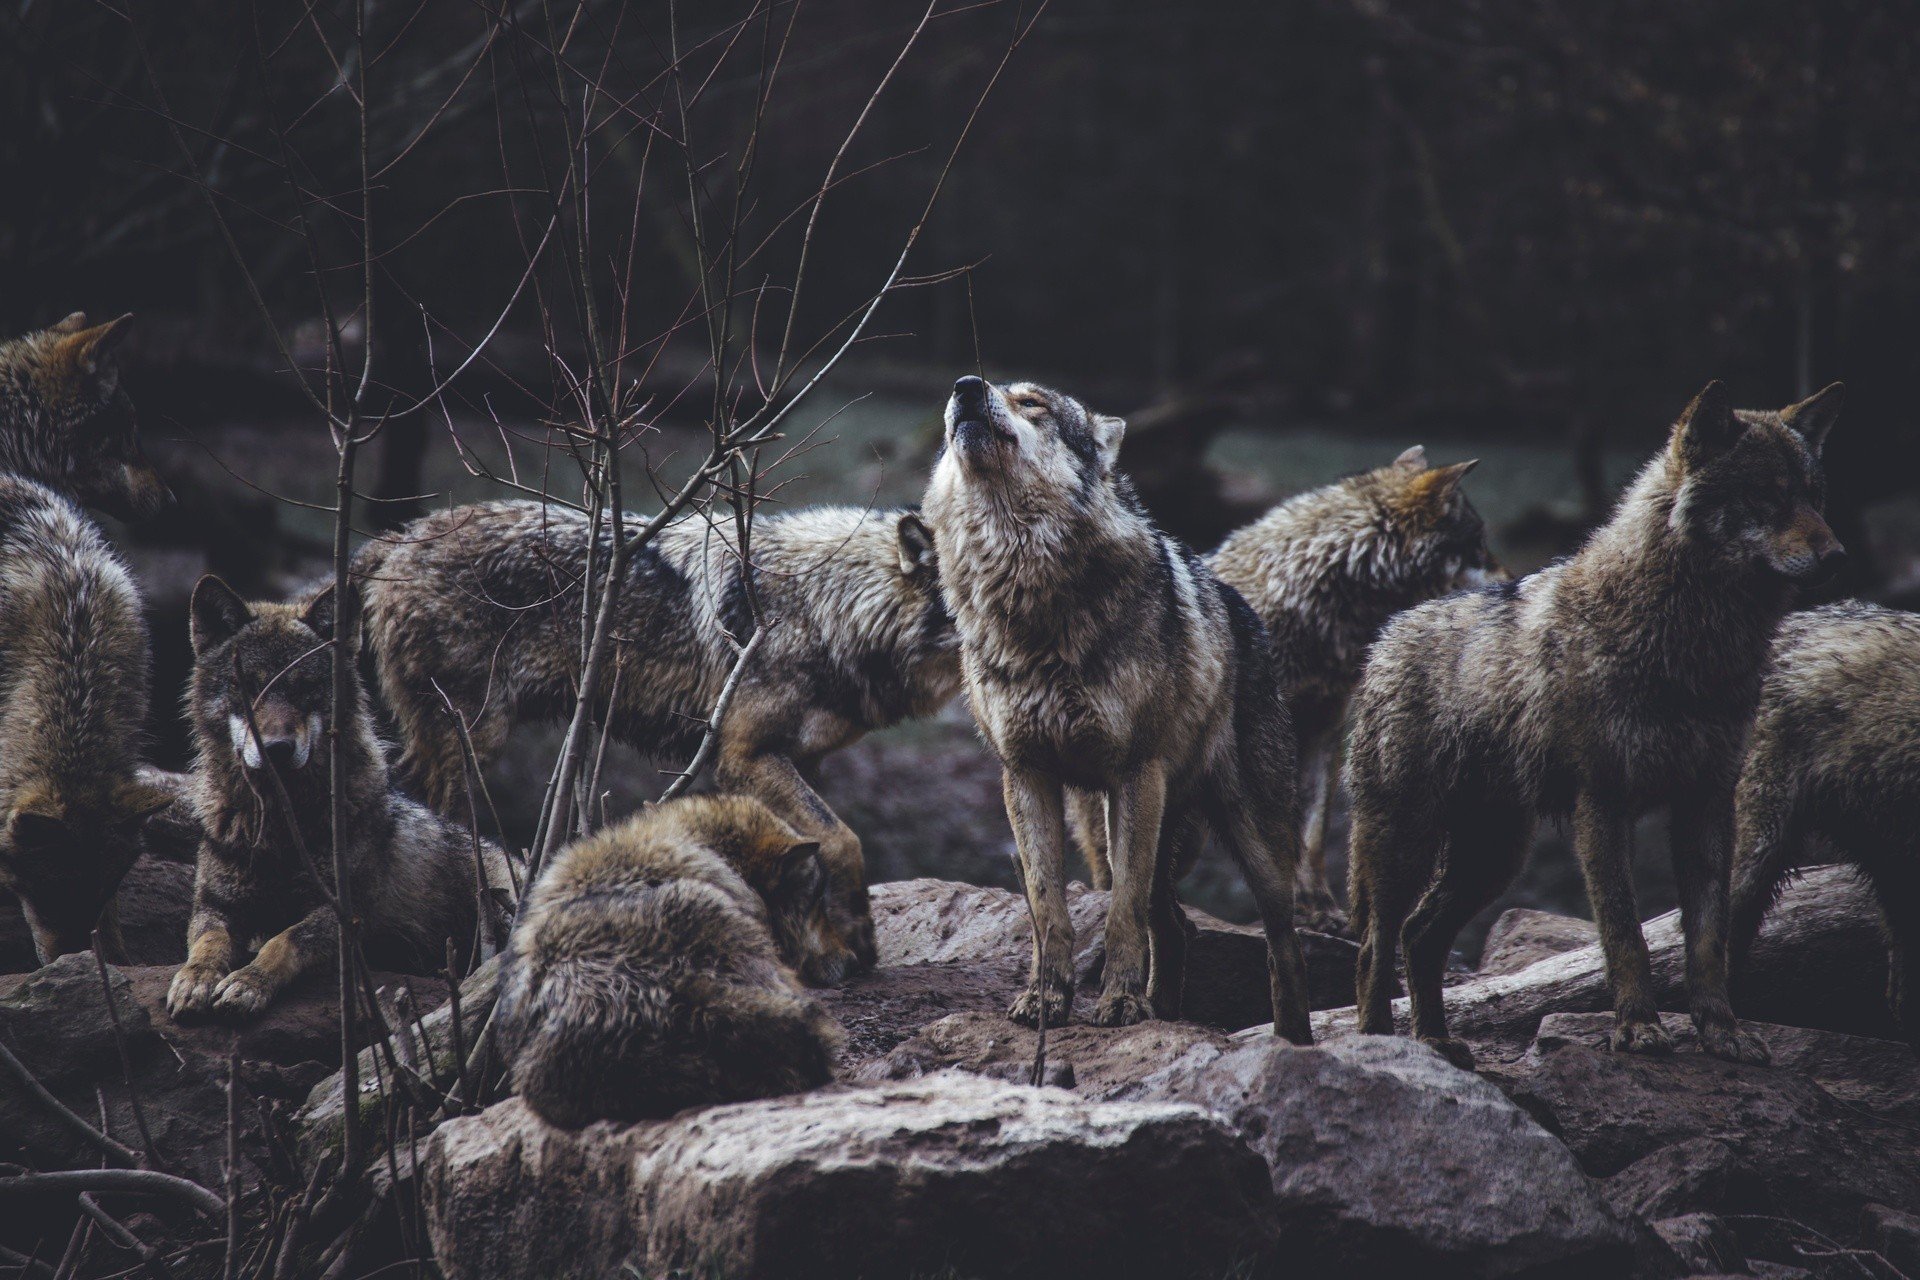 Wilków jest coraz więcej. Podczas spaceru w lesie możemy stanąć z nimi oko  w oko. Jak się wówczas zachować? [ROZMOWA] | Gazeta Lubuska